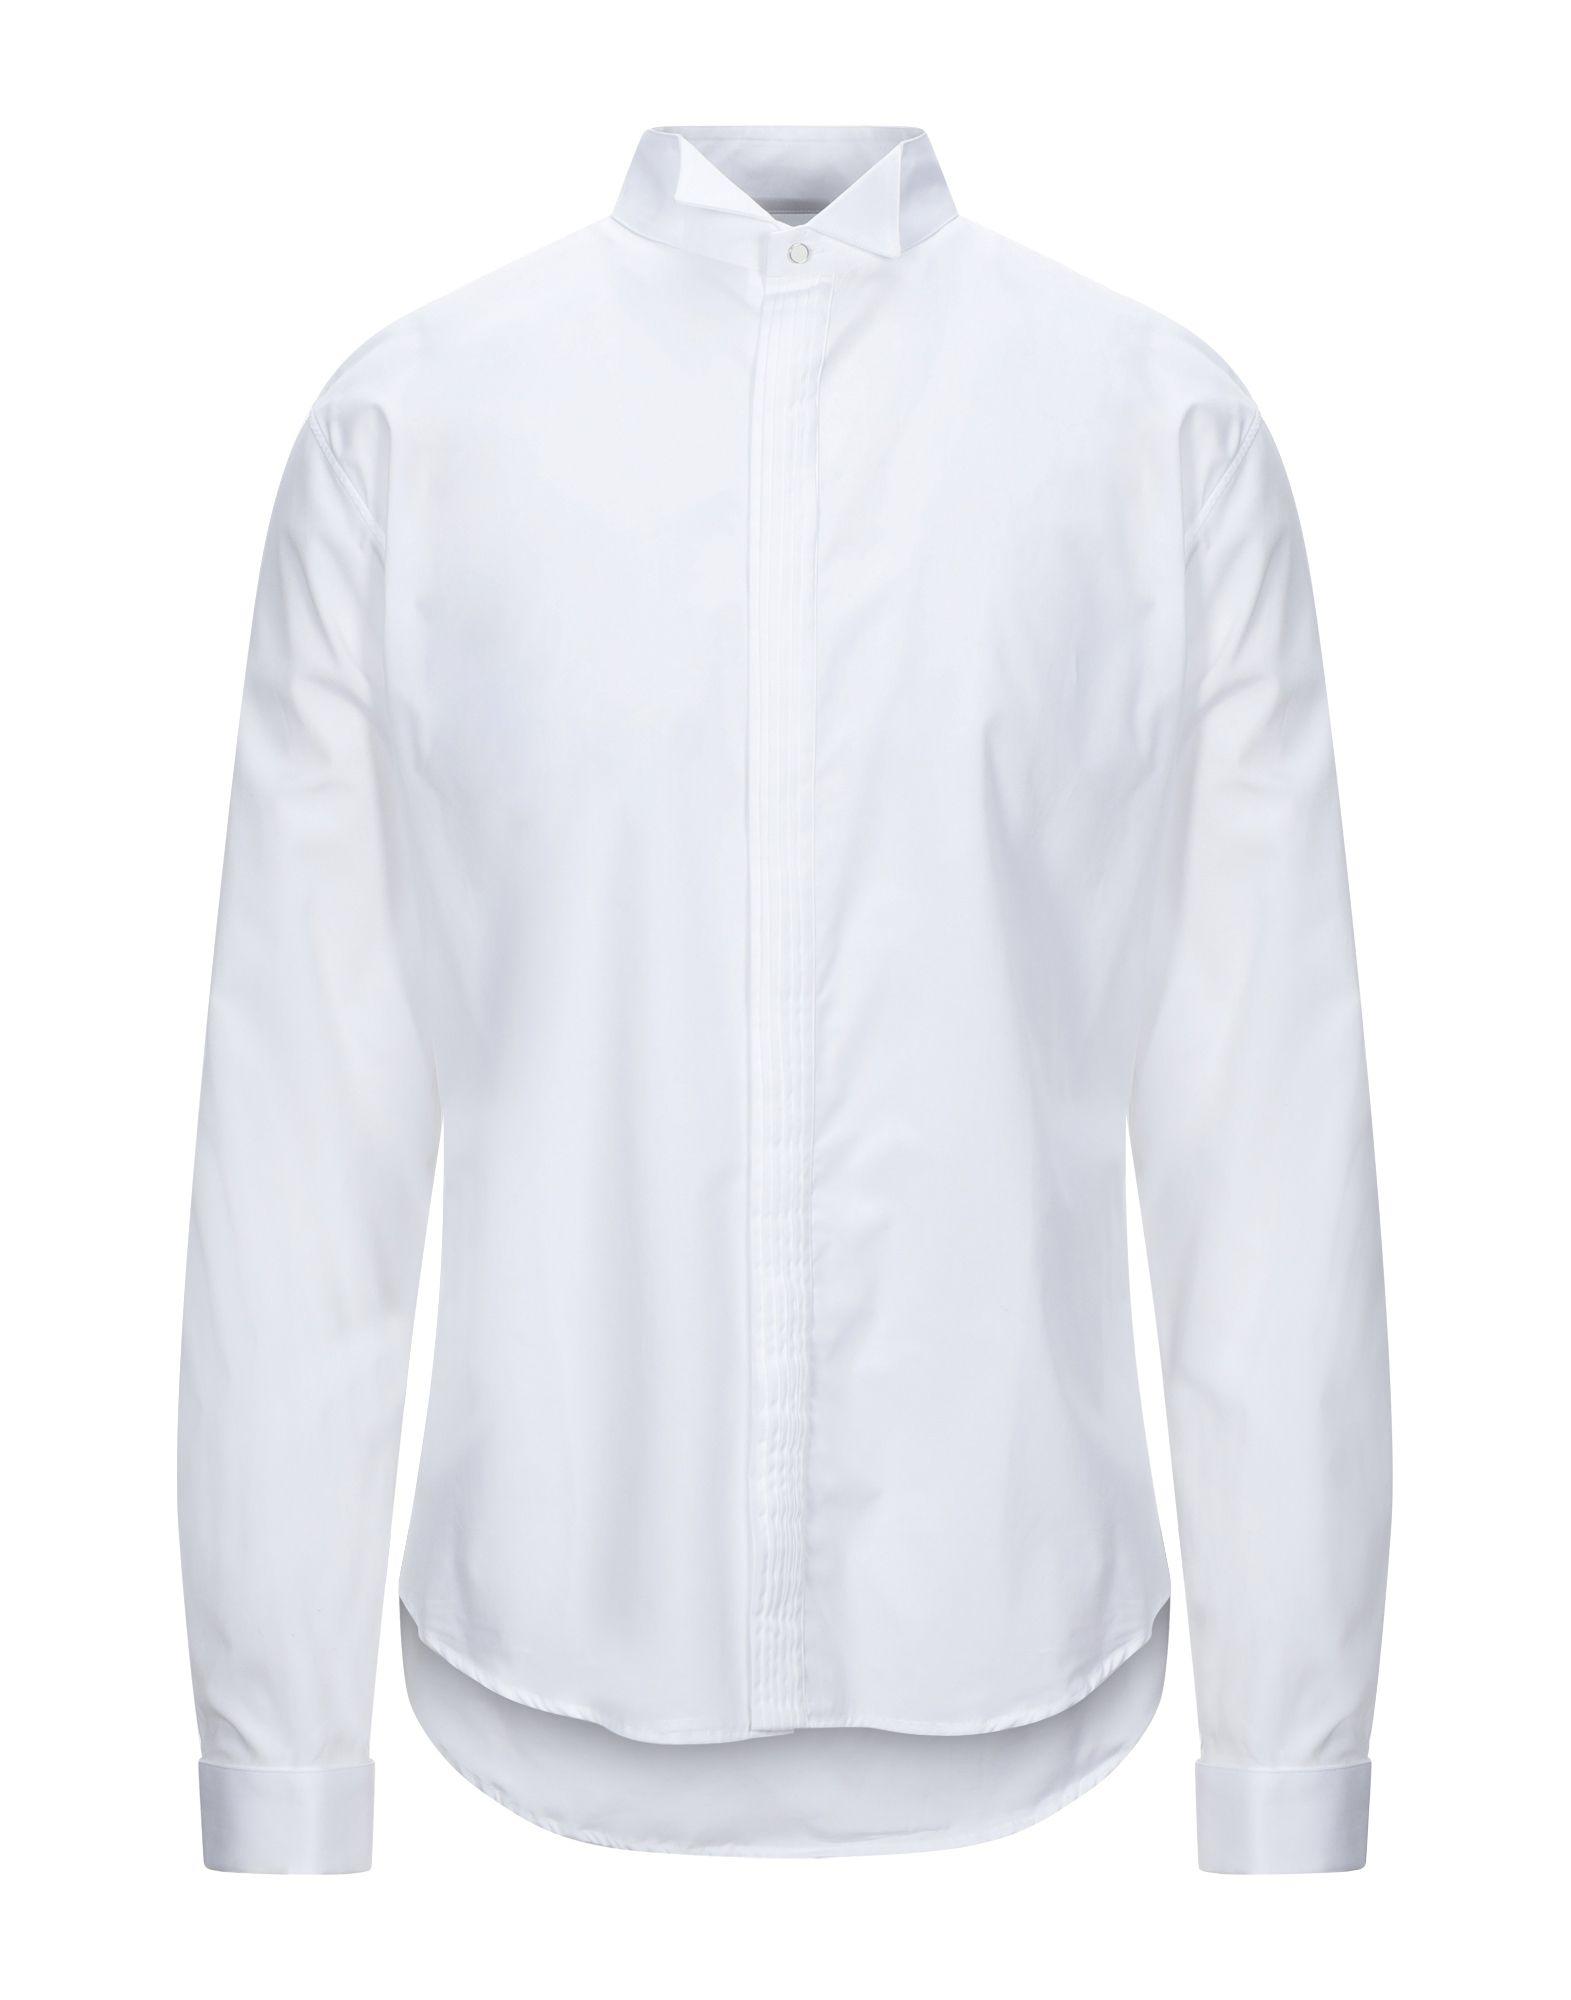 Sandro Cotton Shirt in White for Men - Lyst